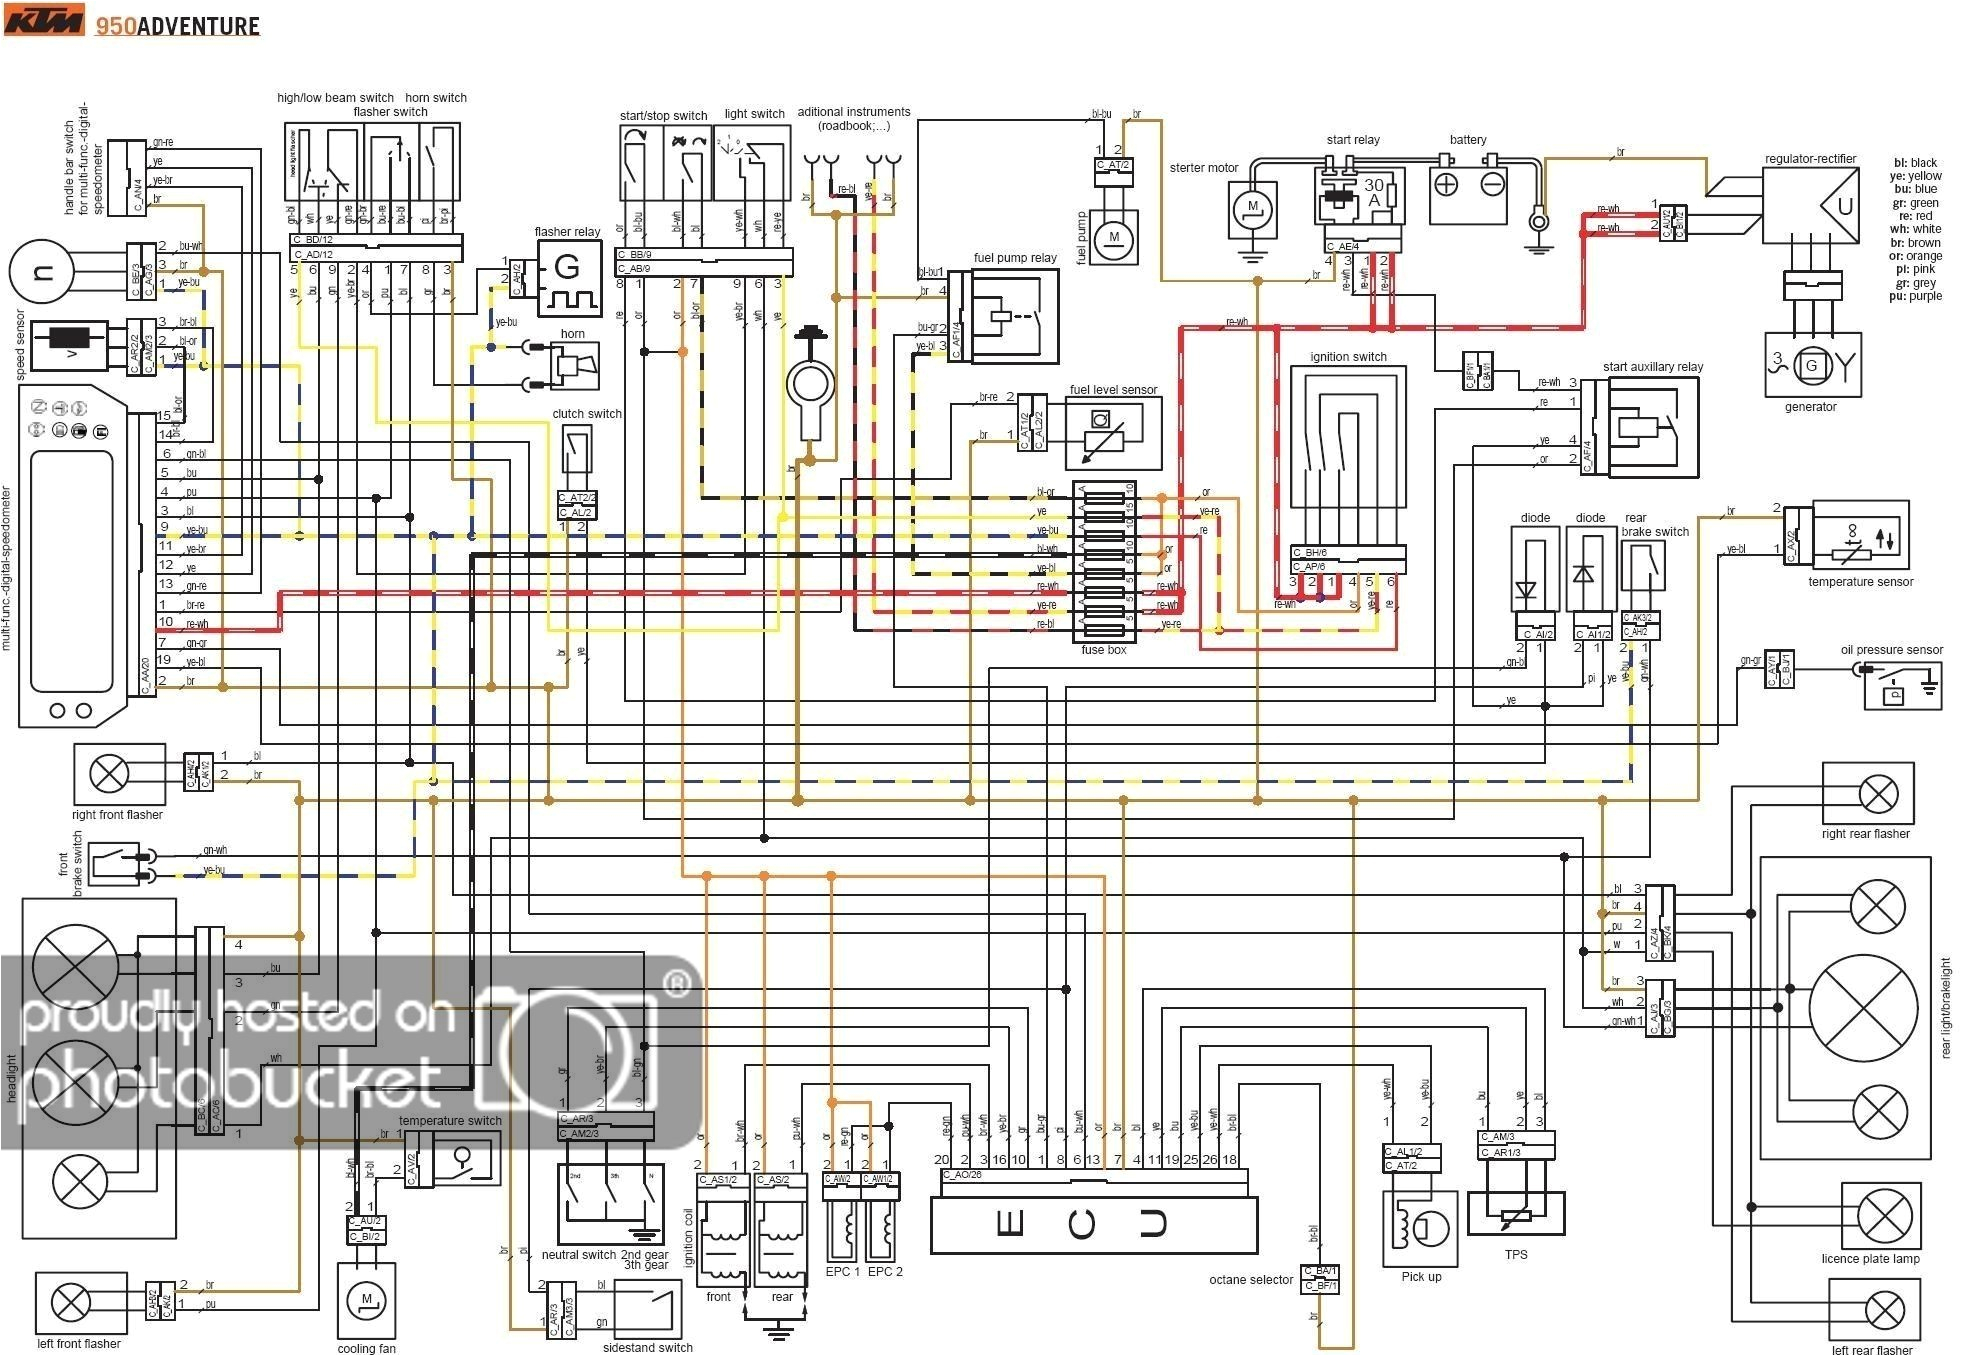 ktm 250 wire diagrams wiring diagram expert ktm 250 sx wiring diagram ktm 250 wire diagrams